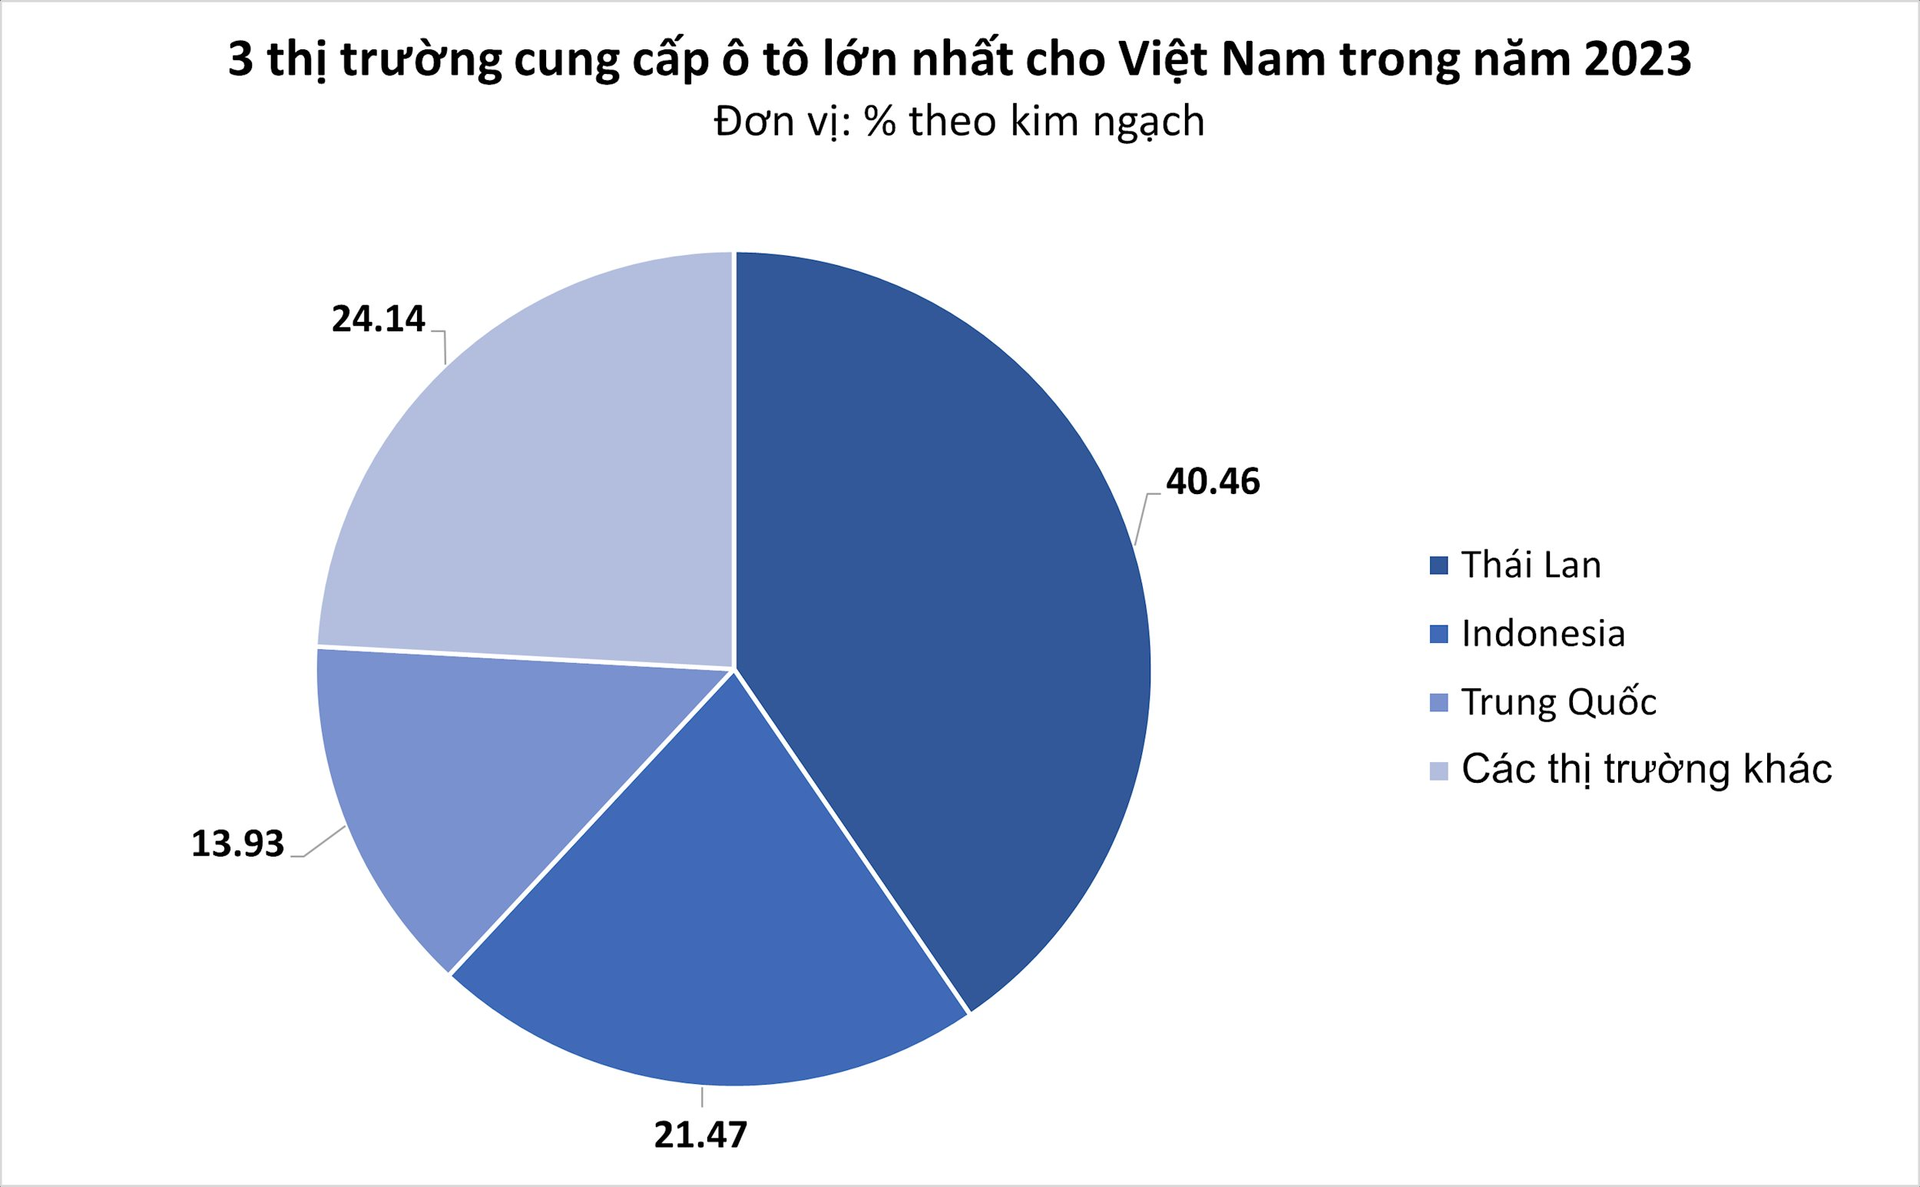 Giá rẻ cùng thuế nhập khẩu 0%, ô tô Thái Lan ồ ạt đổ bộ Việt Nam trong năm 2023- Ảnh 3.